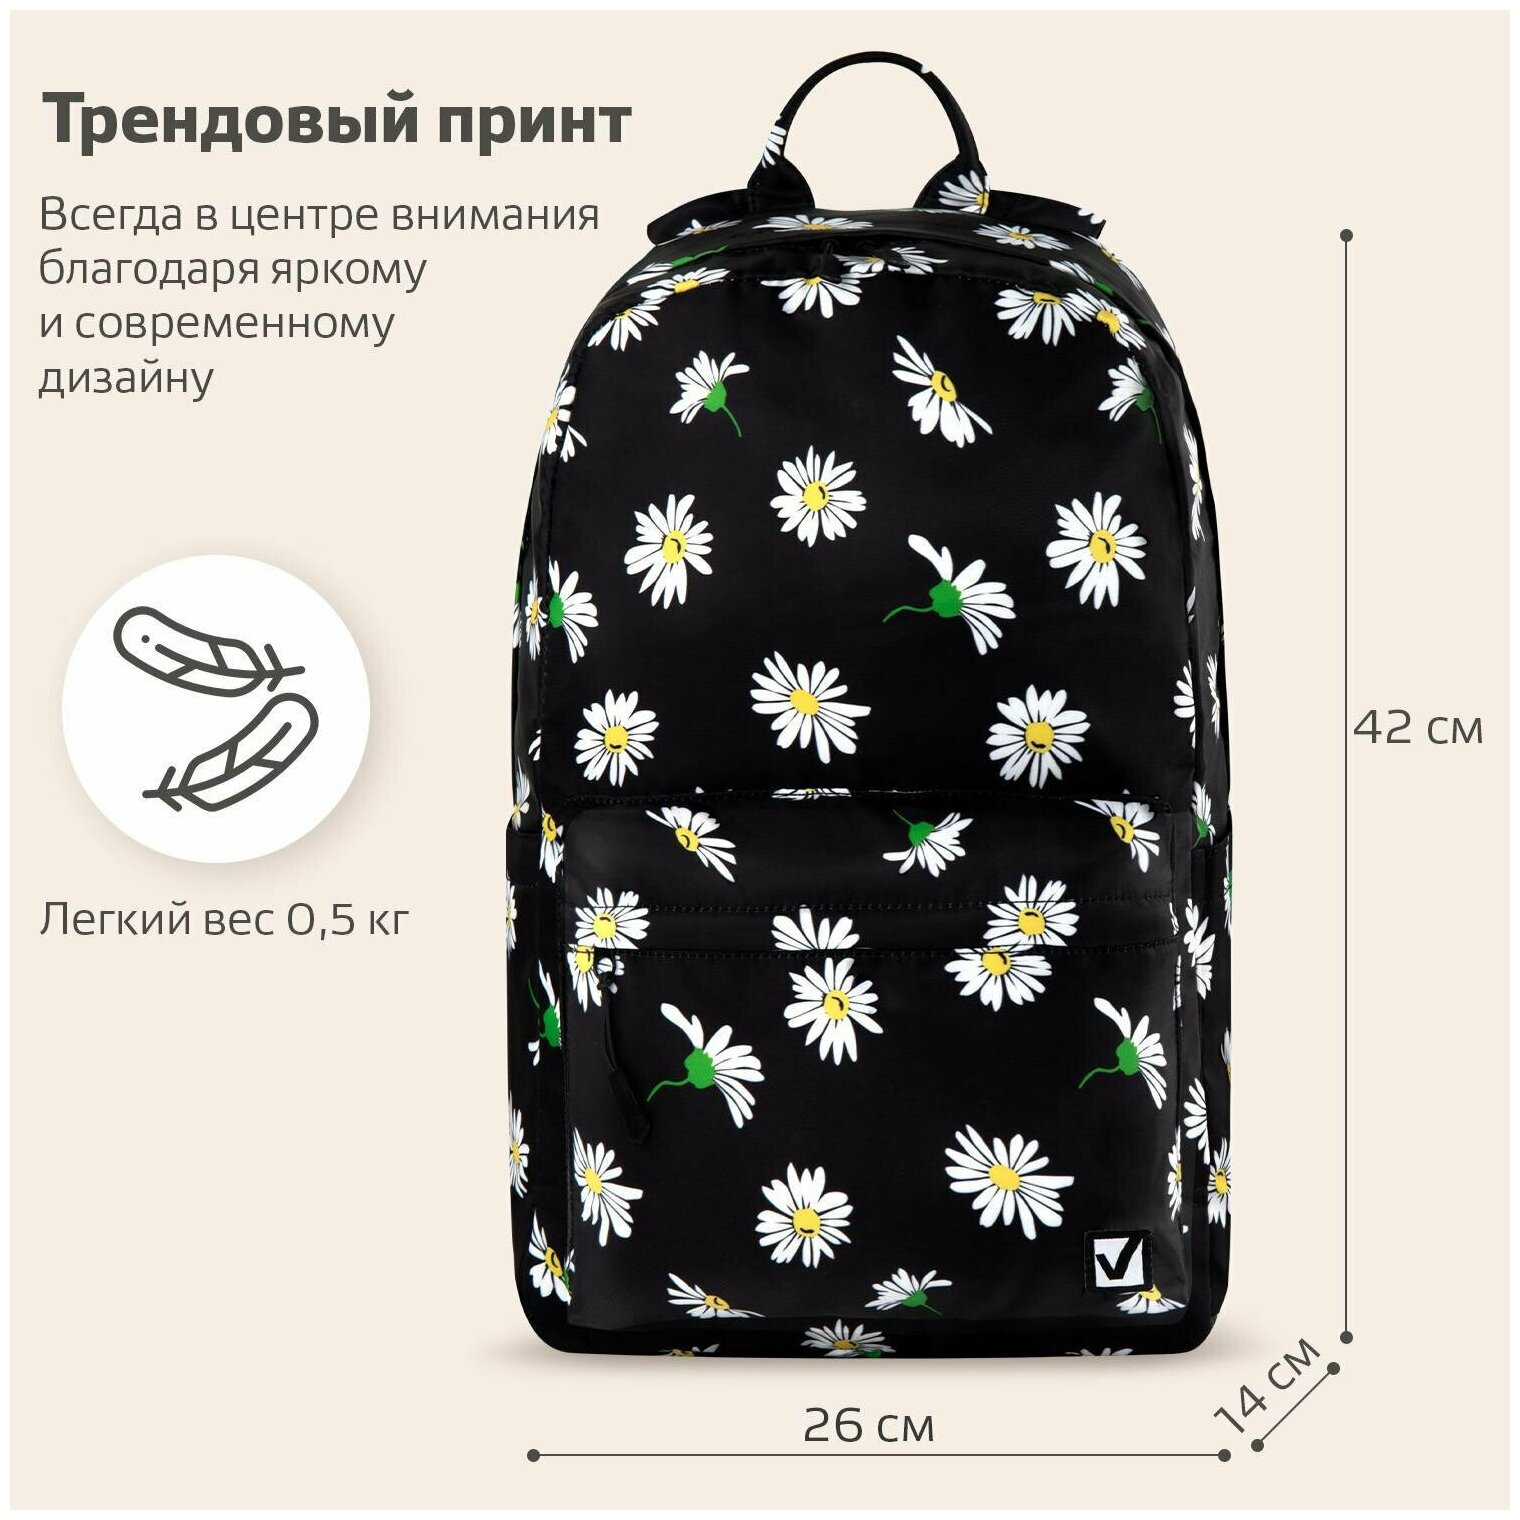 Рюкзак Brauberg Dream универсальный с карманом для ноутбука, эргономичный, Camomile, 42х26х14 см, 270773